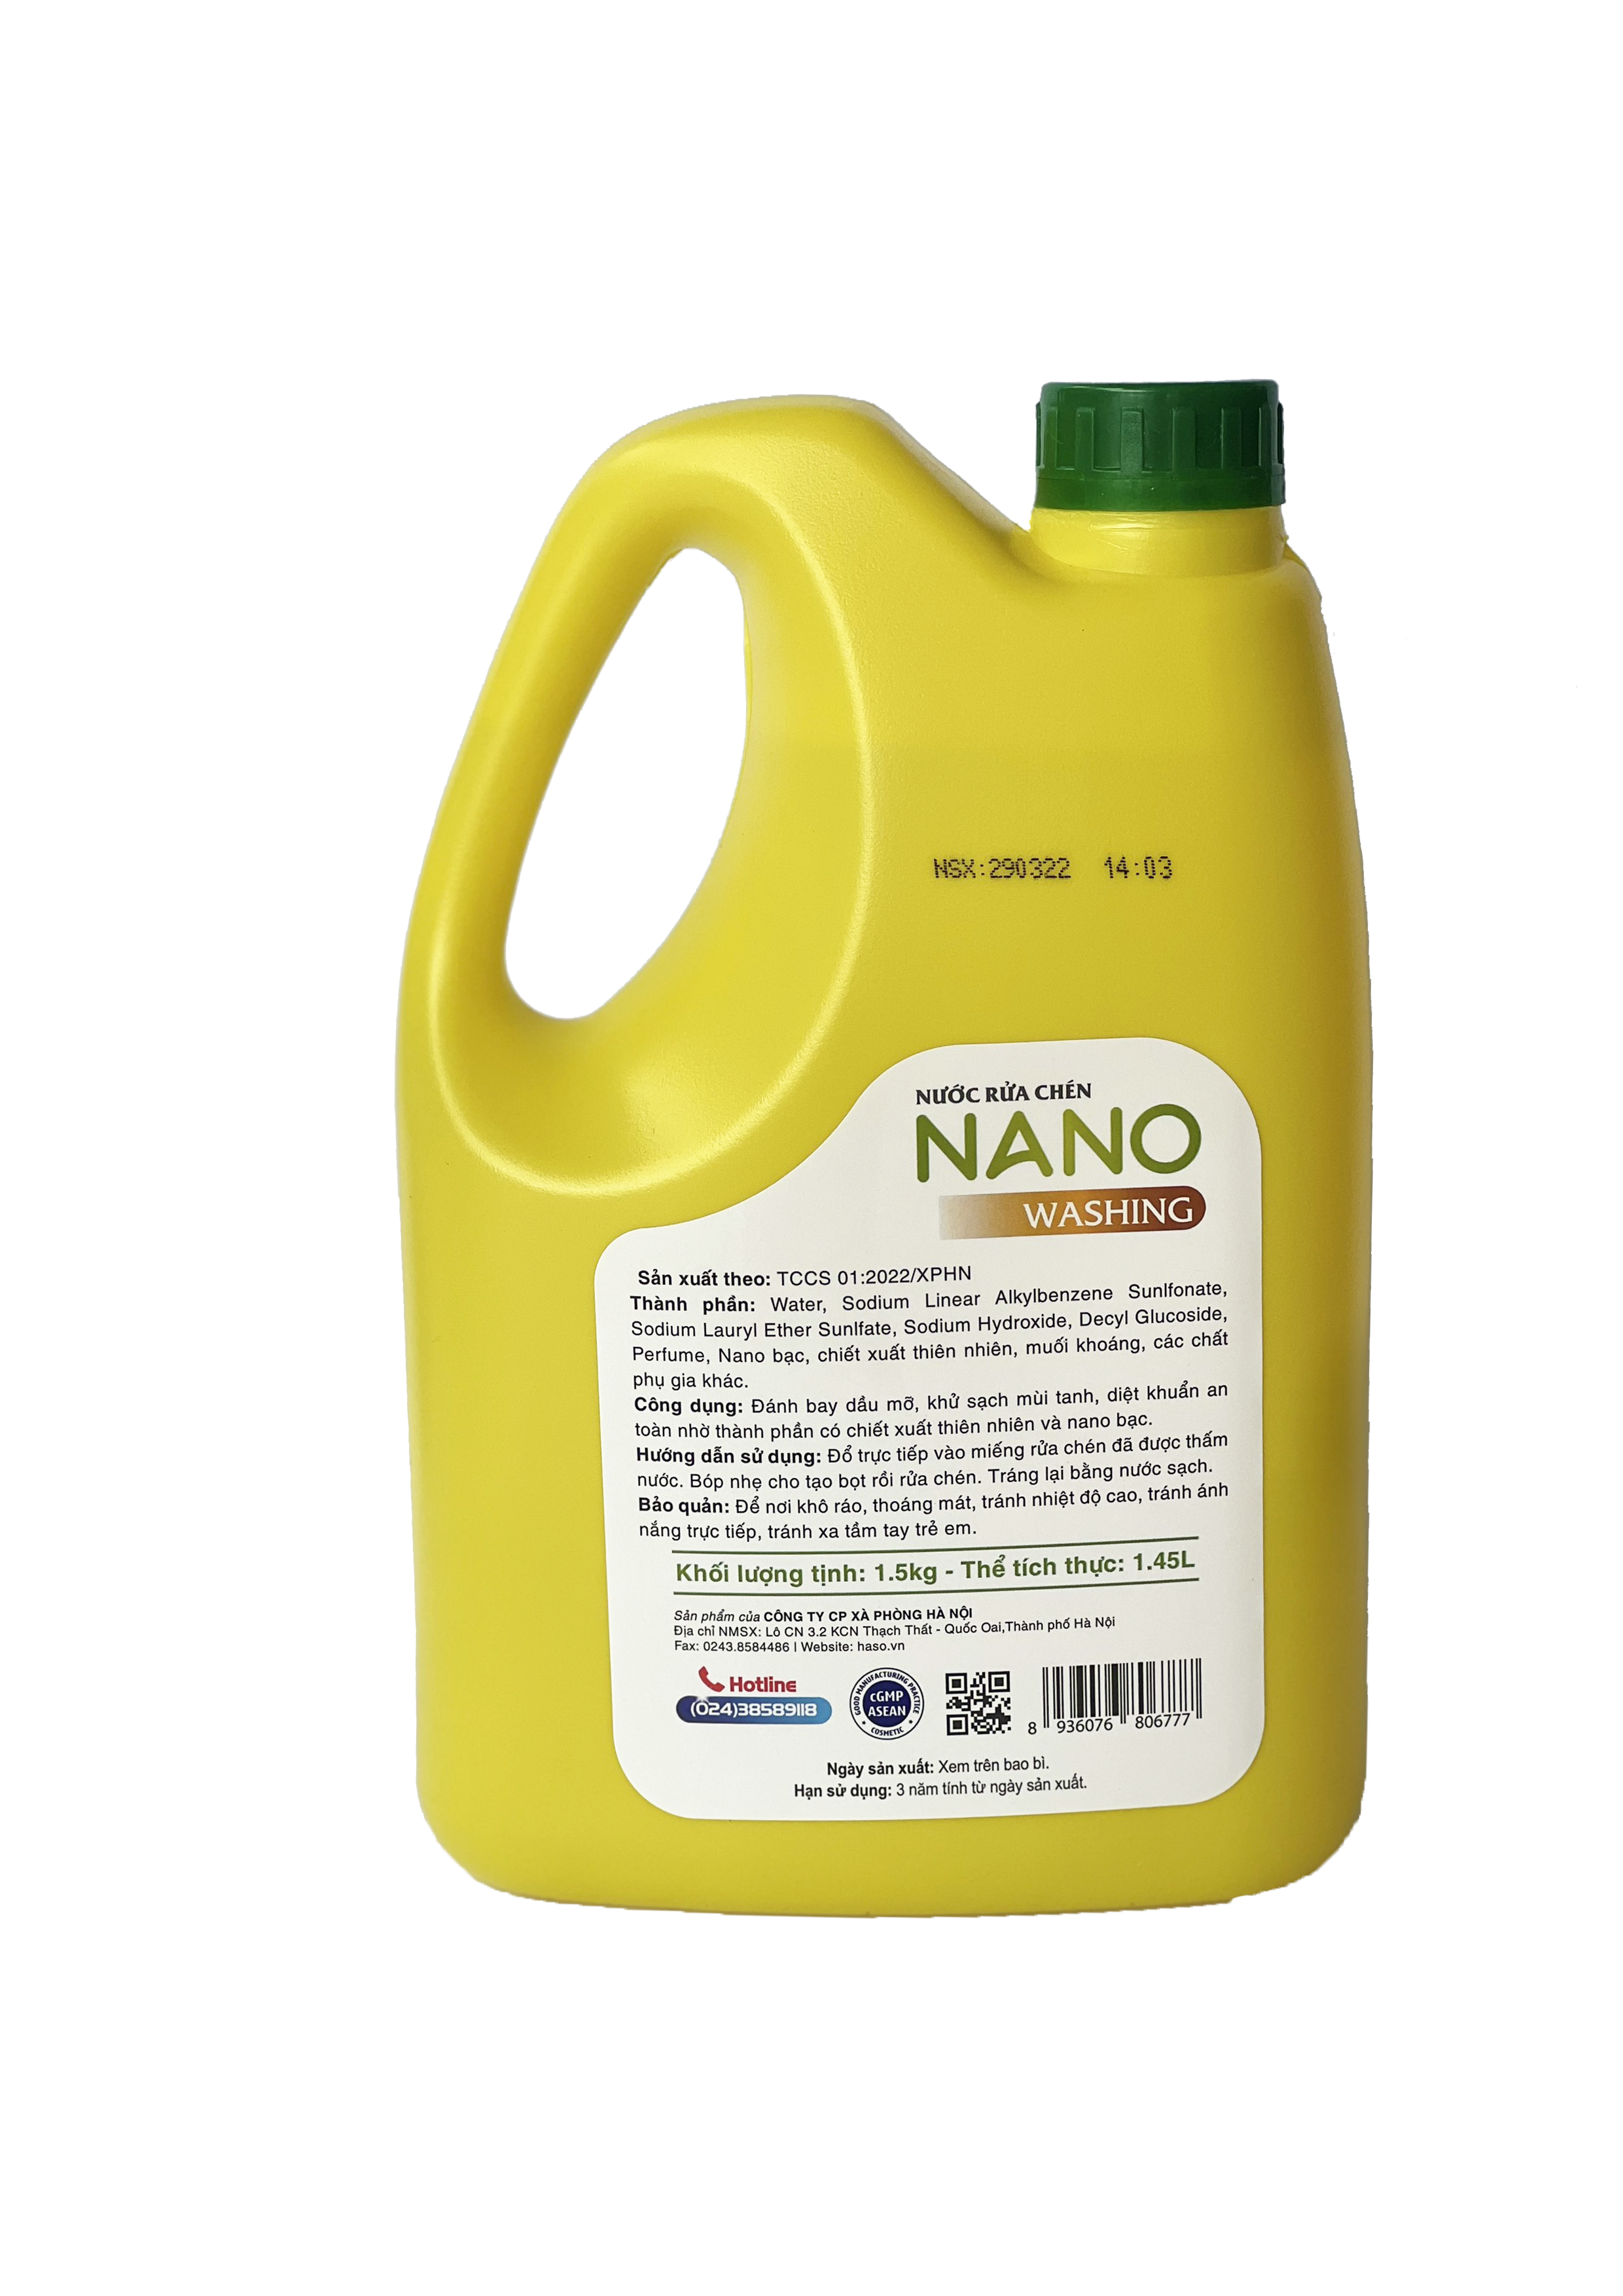 NRC NANO WASHING HƯƠNG CHANH 1,5KG